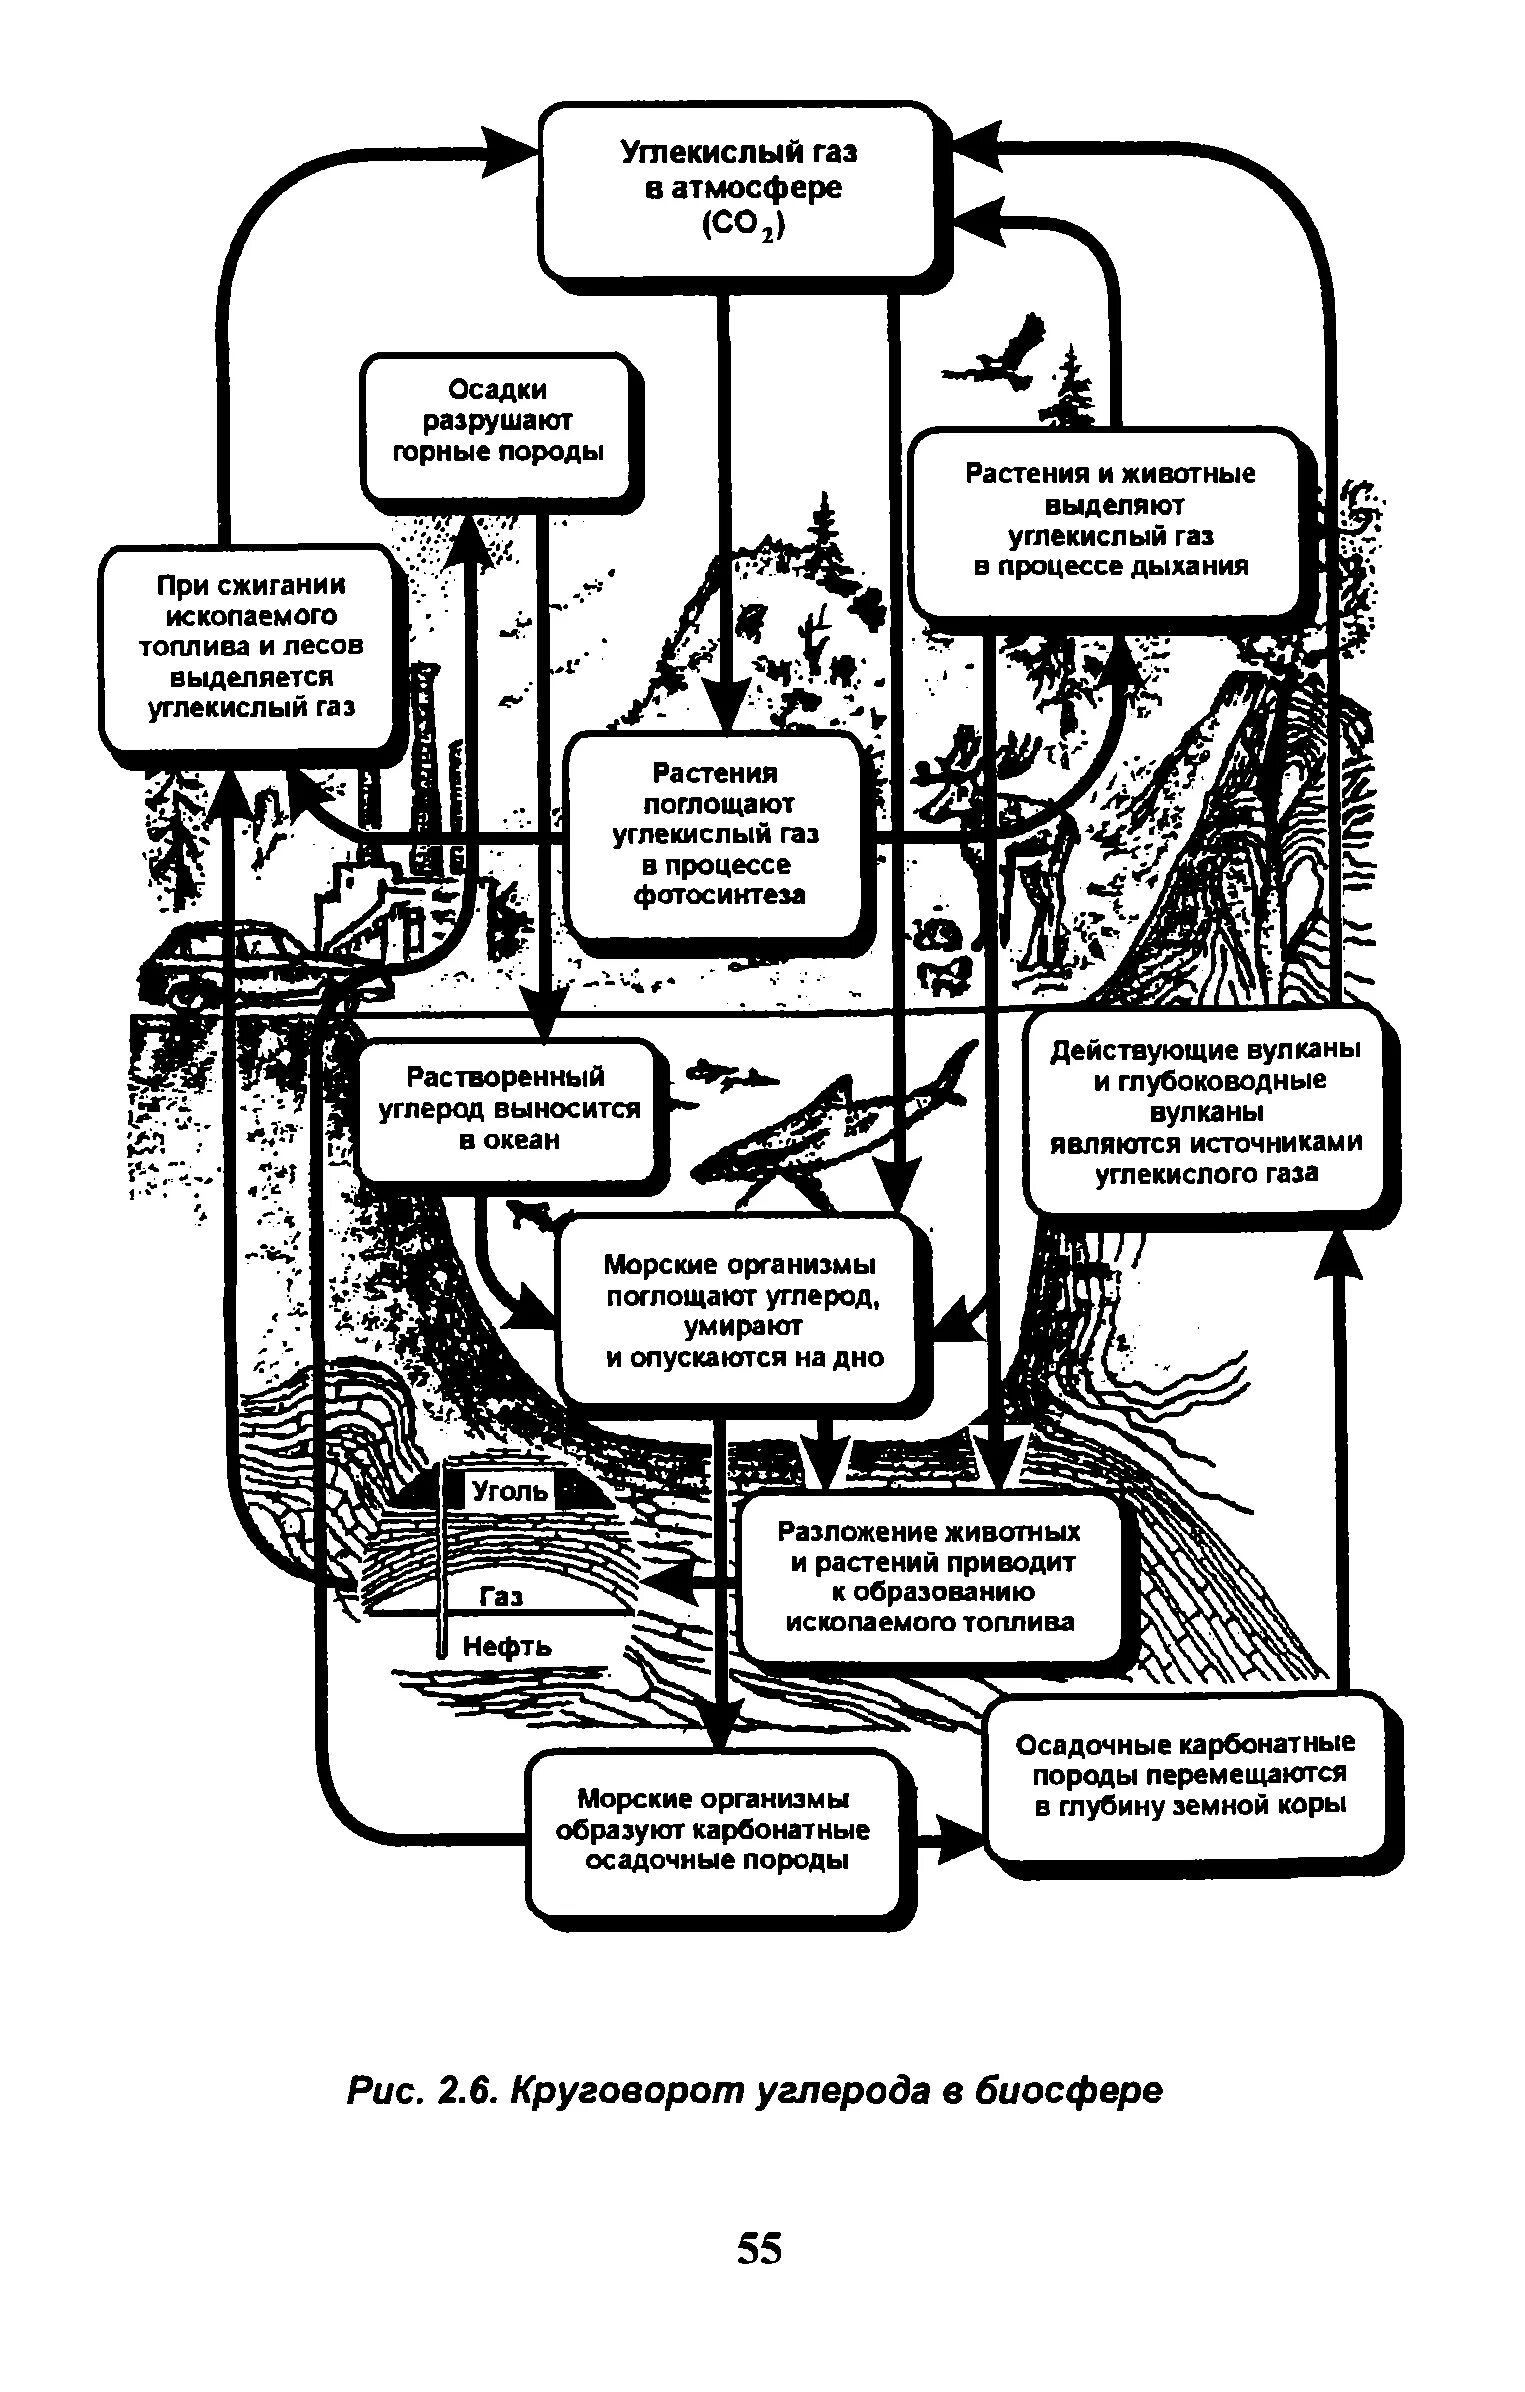 Упрощенная схема круговорота углерода в биосфере. Схема биогеохимического цикла углерода в биосфере. Круговорот углерода в биосфере. Круговорот углерода в биосфере схема. Этап круговорота углерода в биосфере